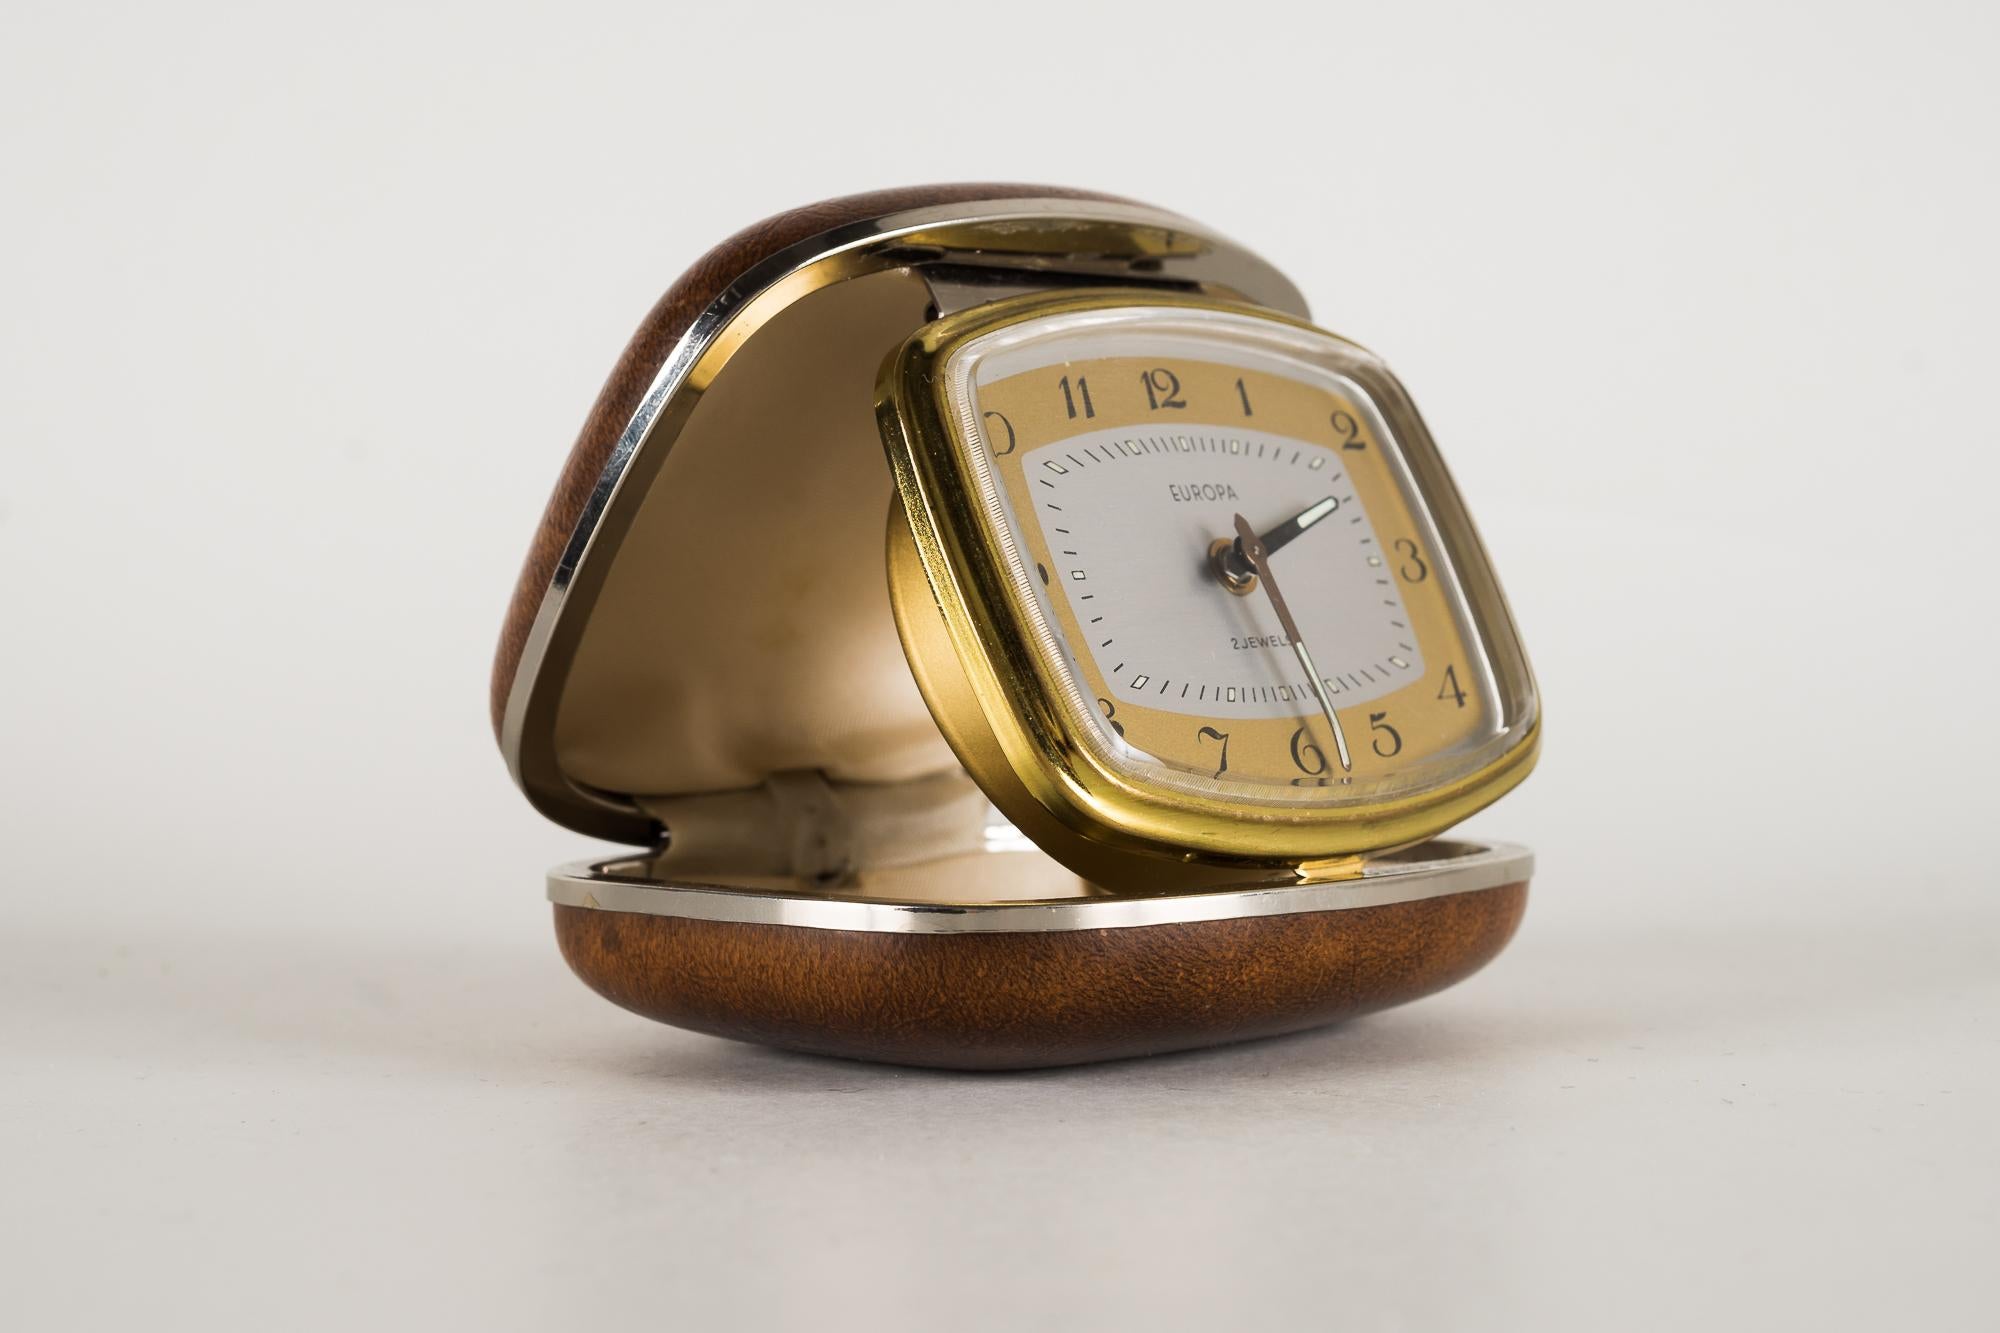 1950s alarm clock